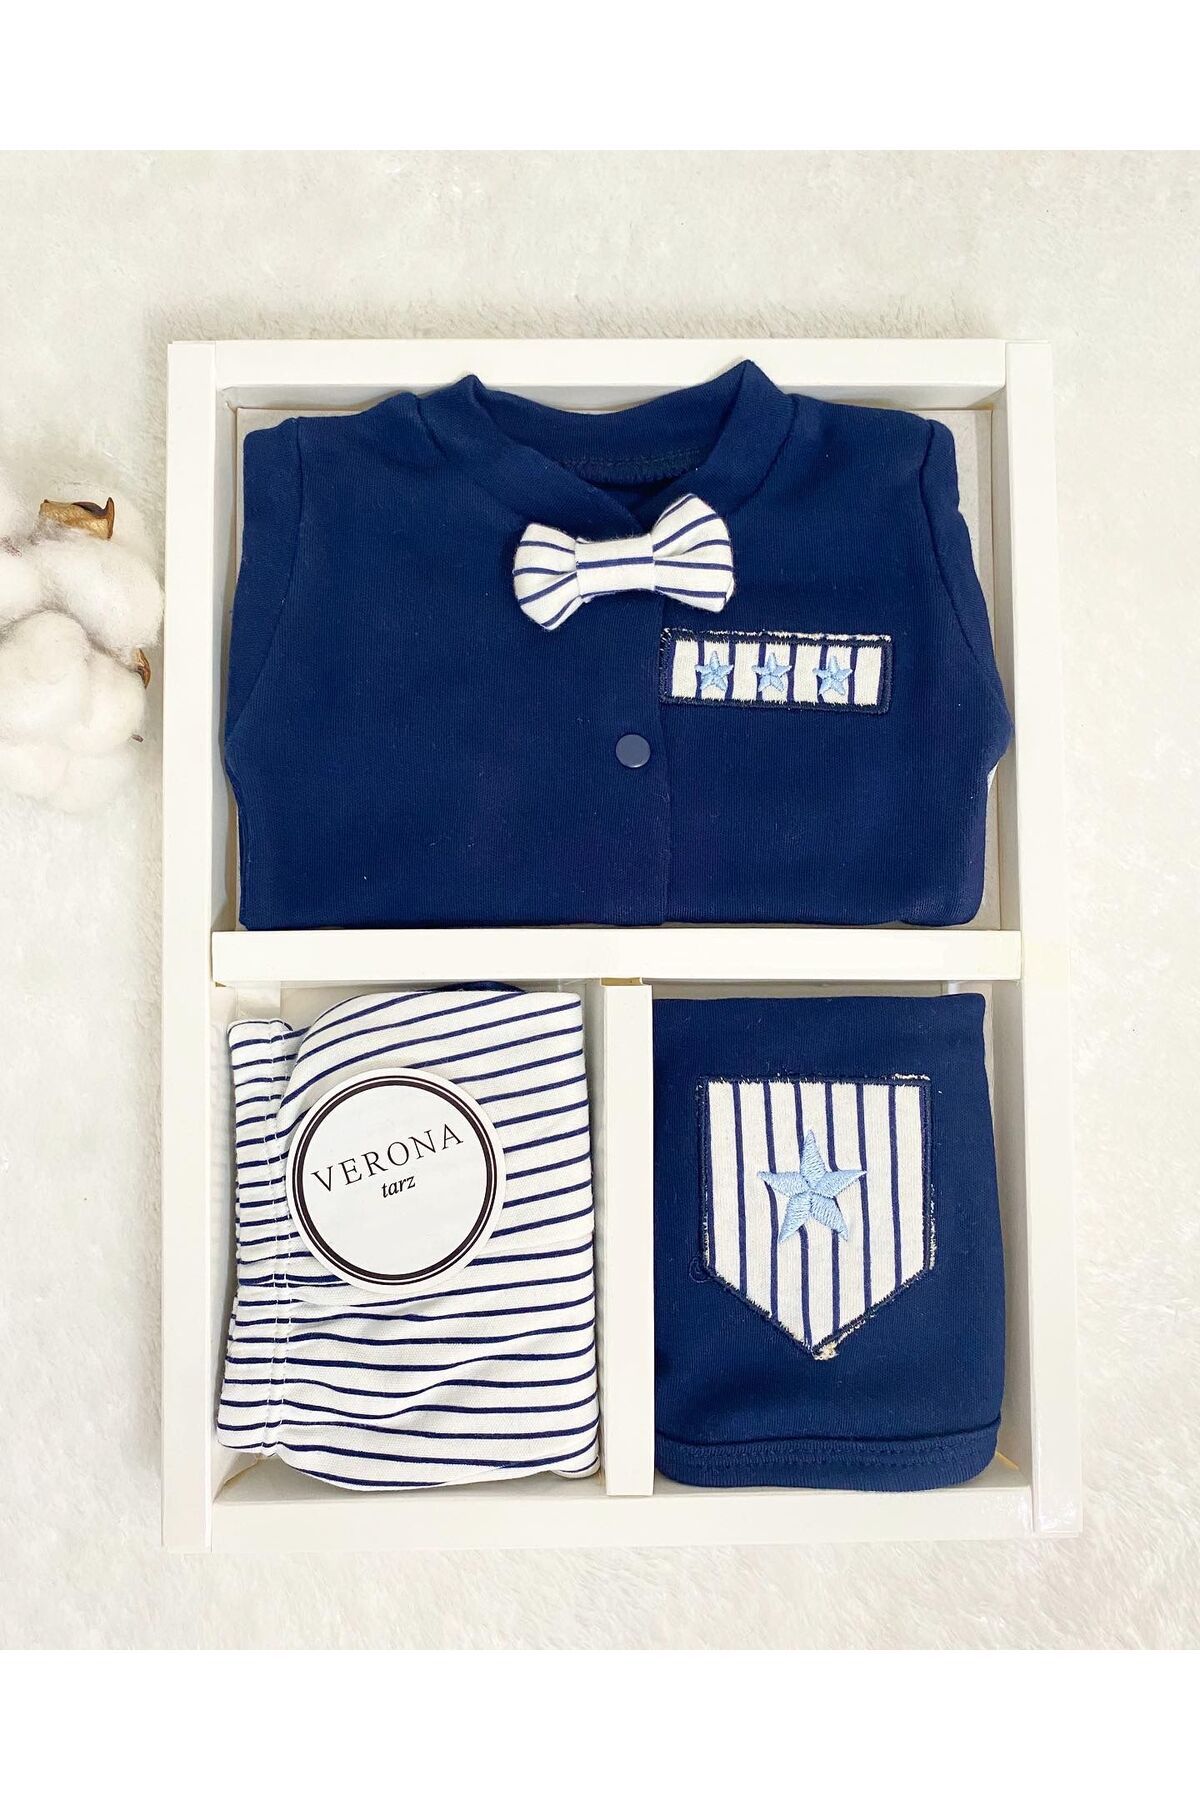 VERONA TARZ Yeni Sezon Organik Kutulu Erkek Bebek Papyonlu 5li Hastane Çıkış Seti Yenidoğan Kıyafeti Hediyelik